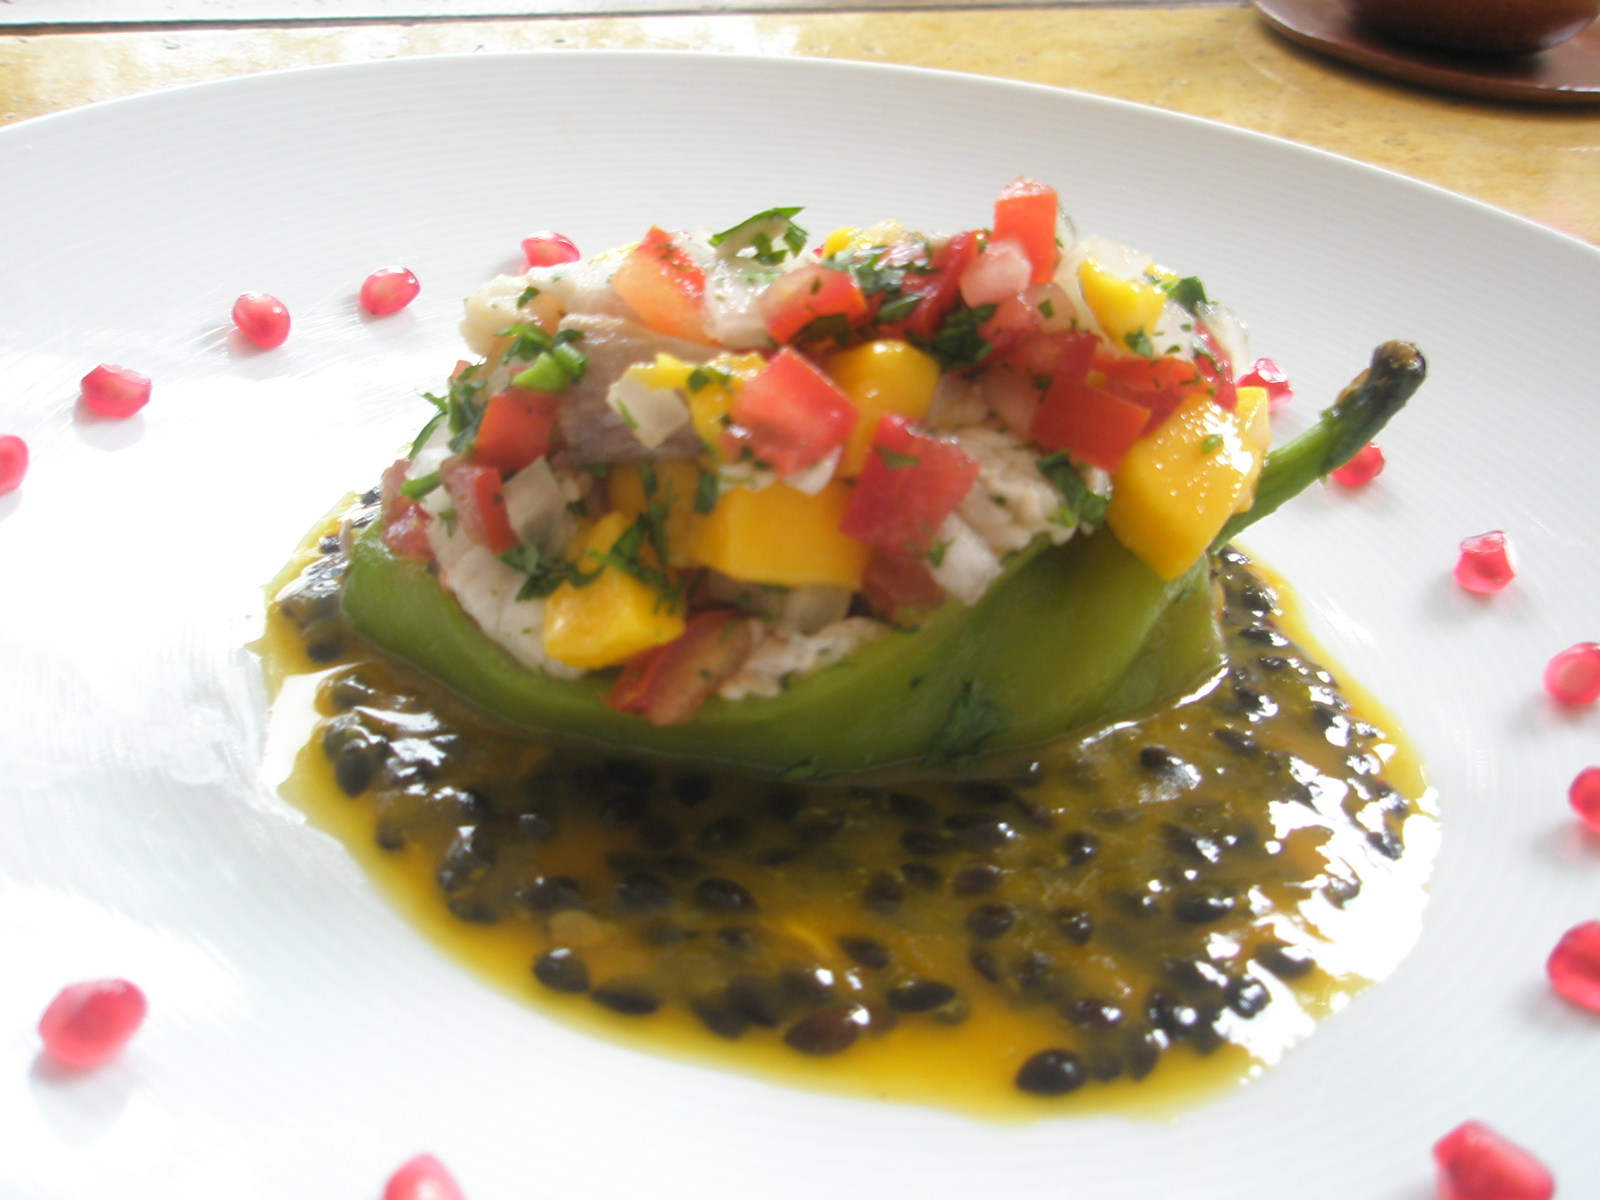 Best Places to Eat in Oaxaca Mexico | Casa Oaxaca Restaurant in Oaxaca